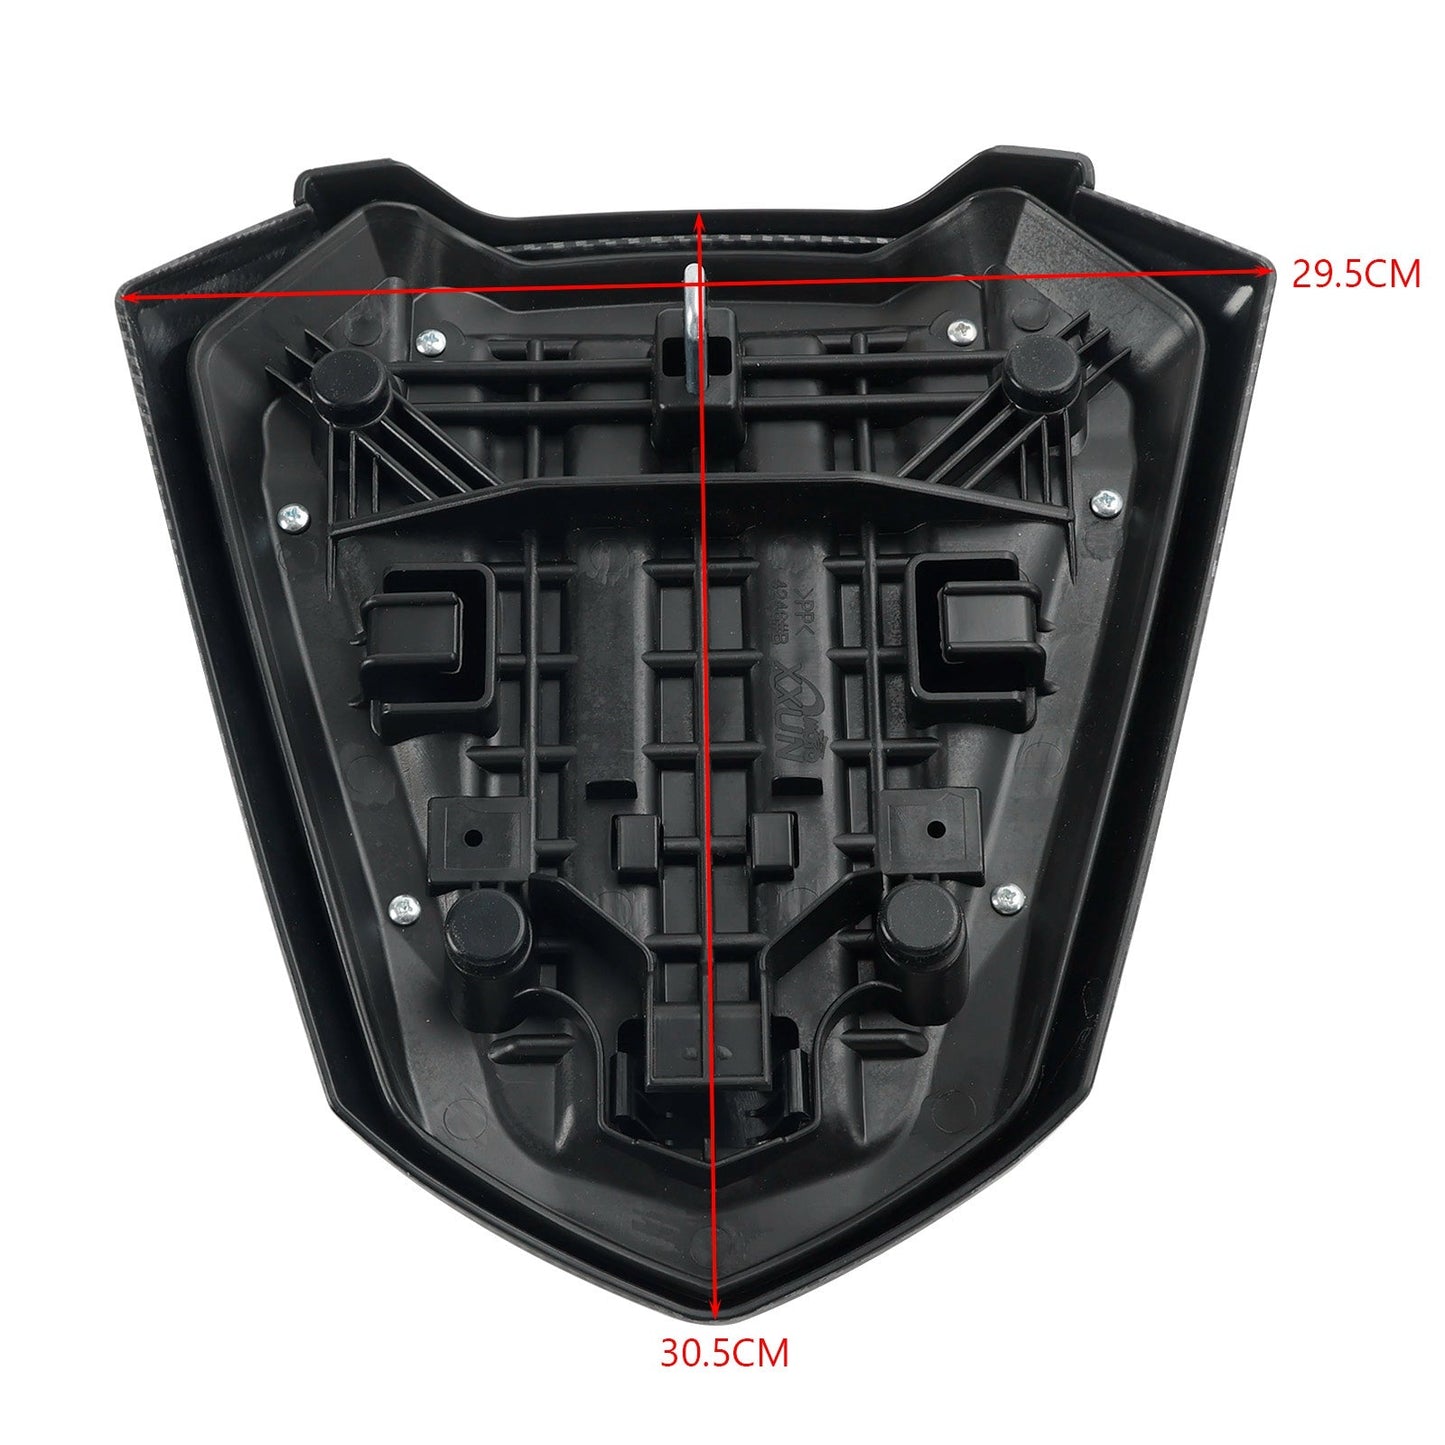 2022-2023 Honda CBR500R Rear Tail Seat Fairing Cover